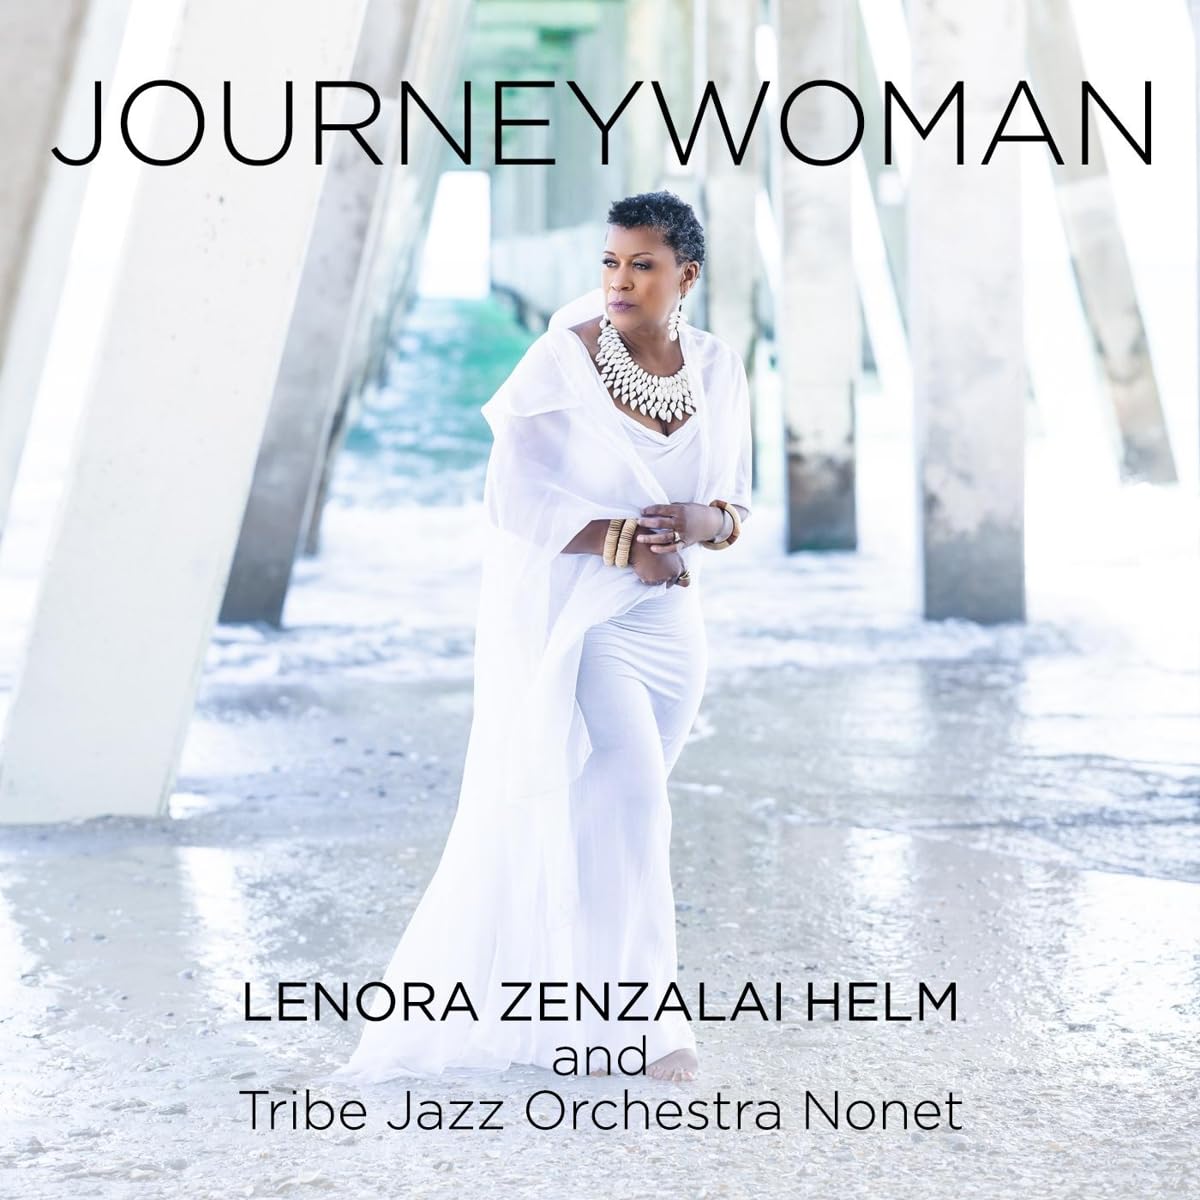 LENORA ZENZALAI HELM - Journeywoman cover 